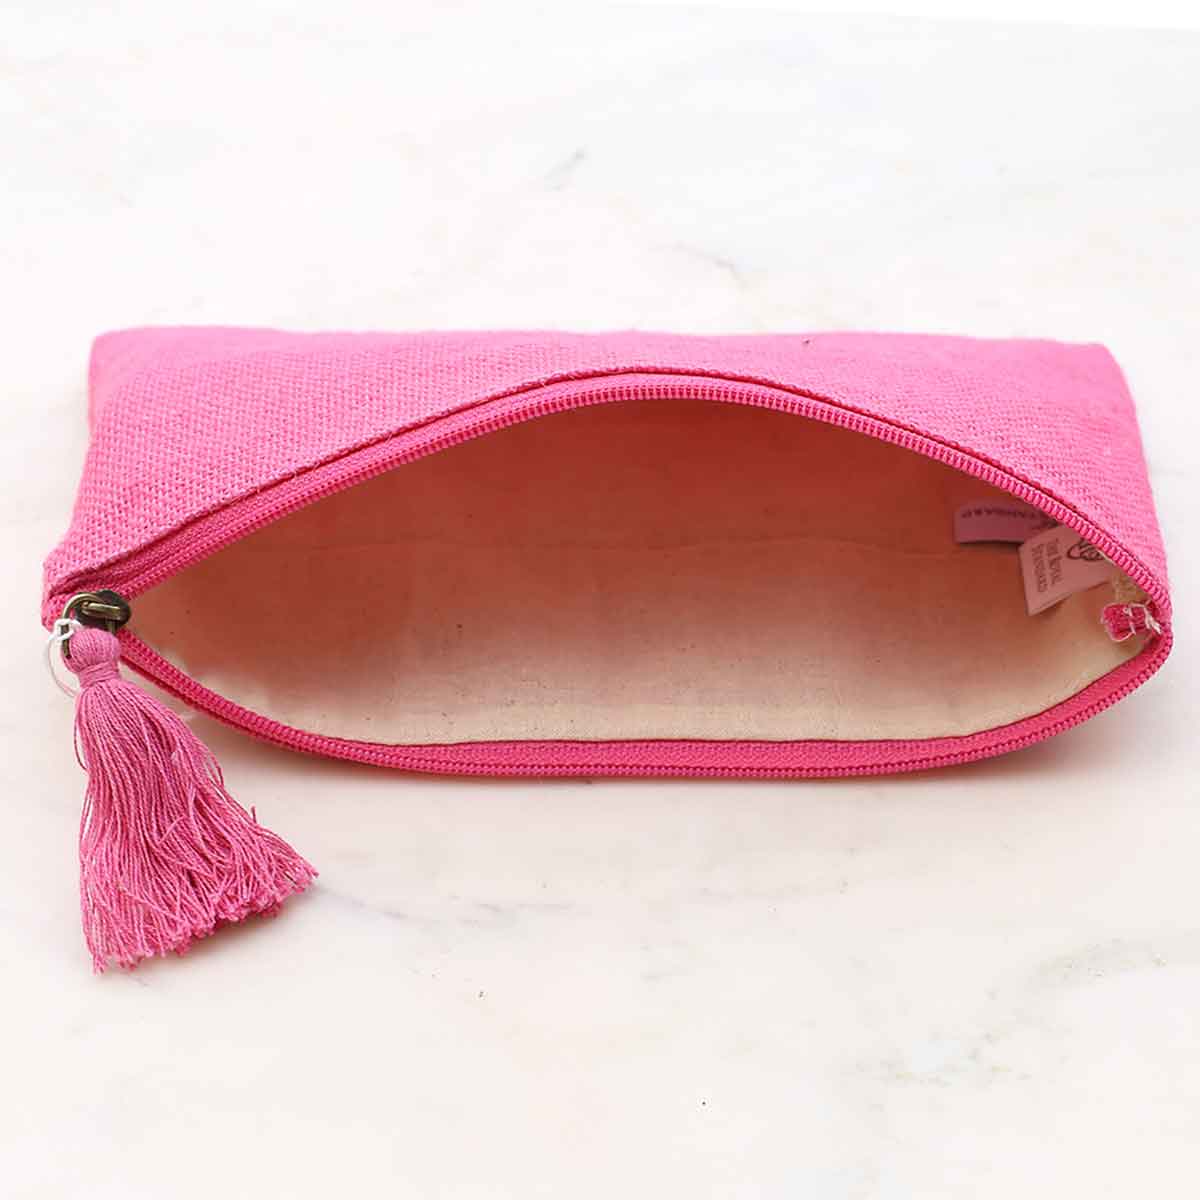 Jute Cosmetic Bag   Hot Pink   10x6: Hot Pink